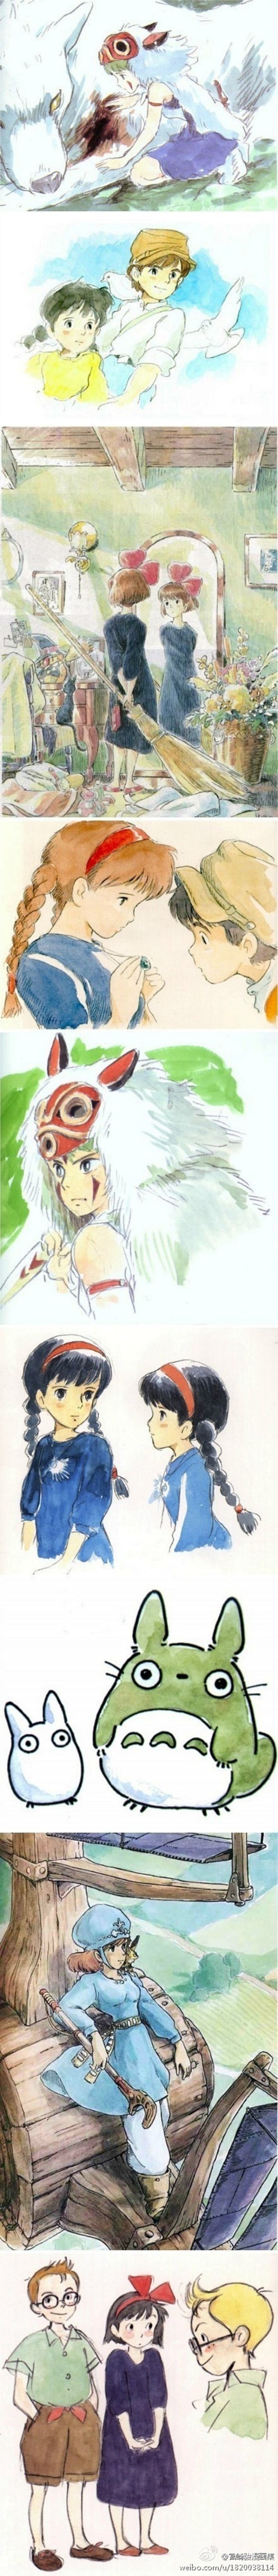 宫崎骏动画手稿，太多太多的美好回忆